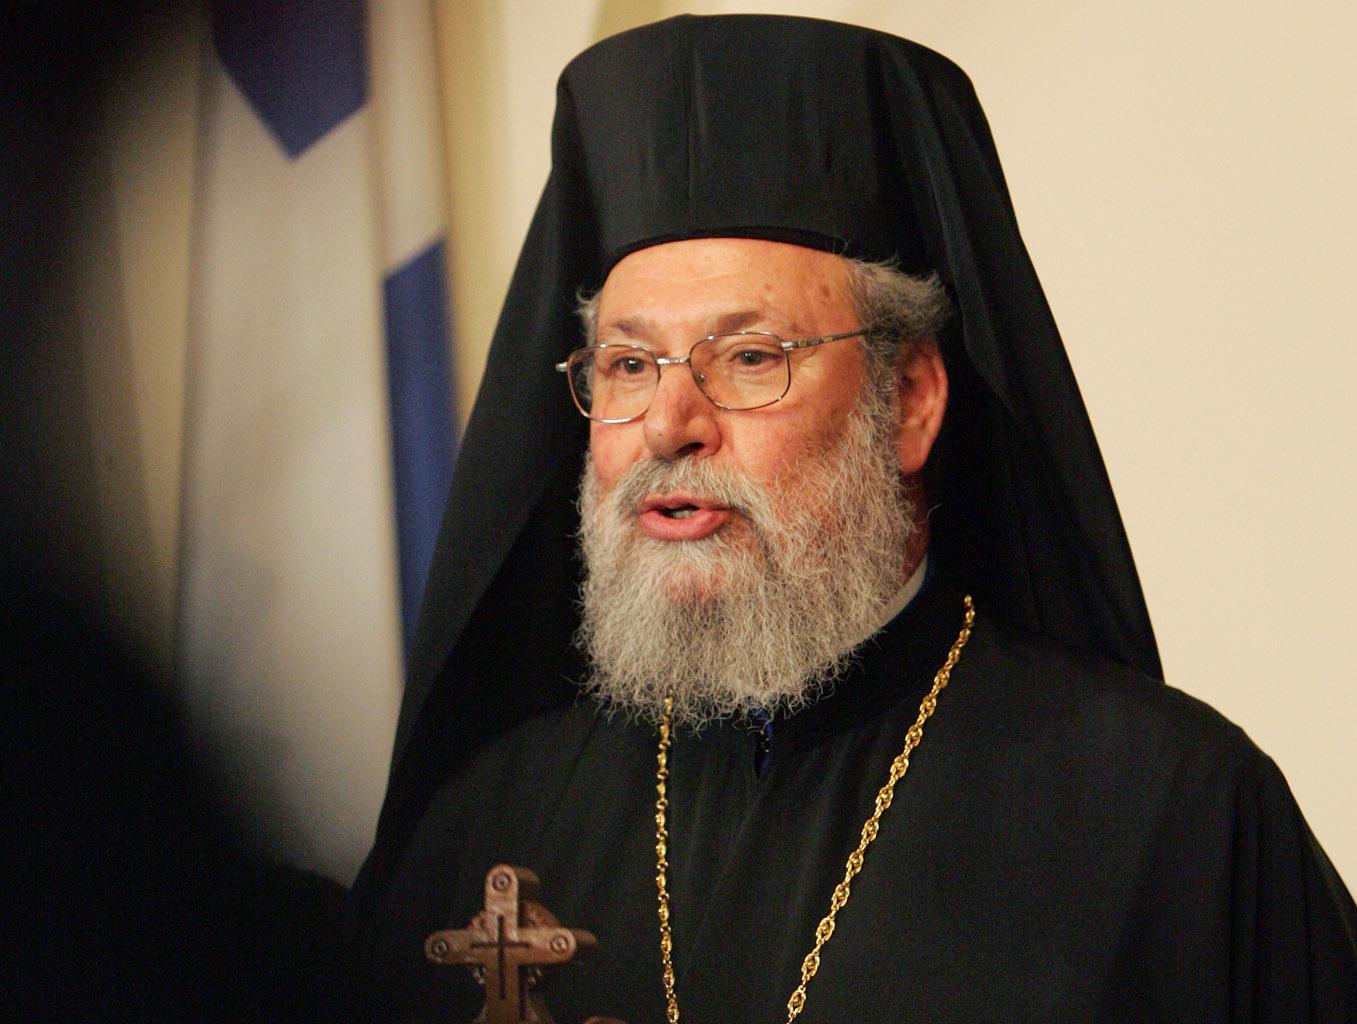 Φυσικό αέριο και Κυπριακό οι στόχοι της τρόικας, λέει ο αρχιεπίσκοπος Κύπρου